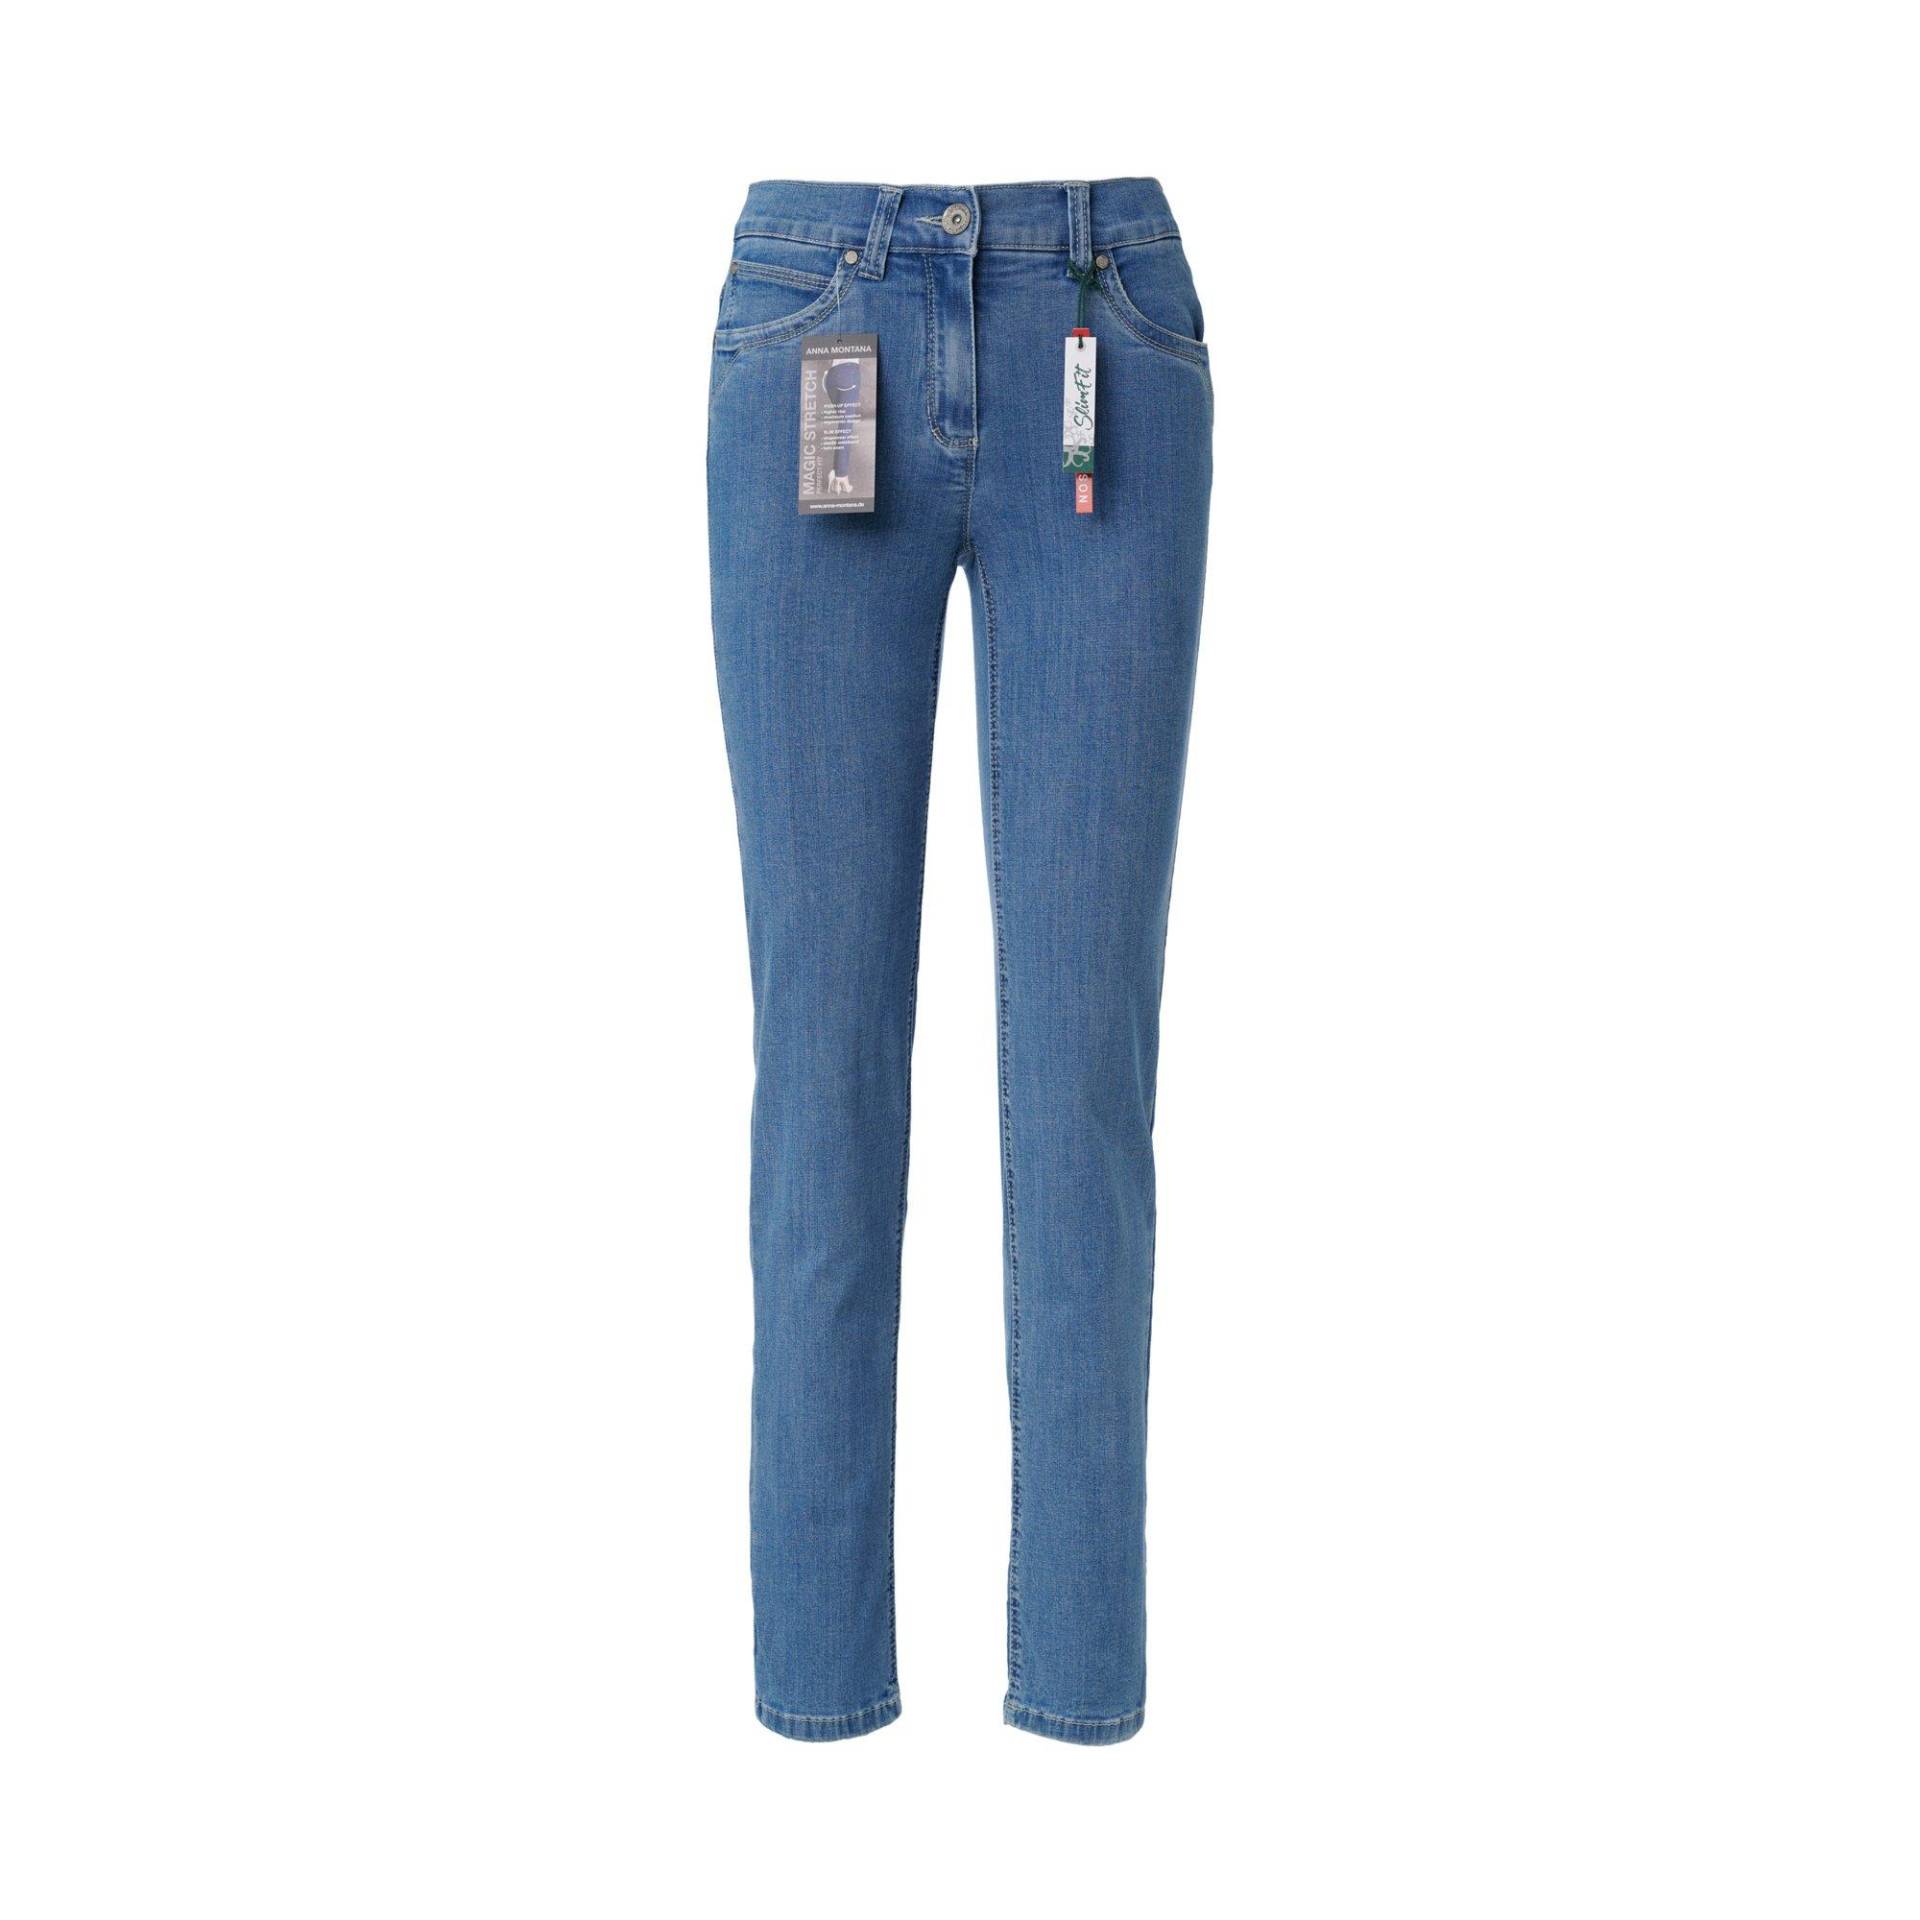 Jeans, Slim Fit Damen Bleached Blau 44 von ANNA MONTANA